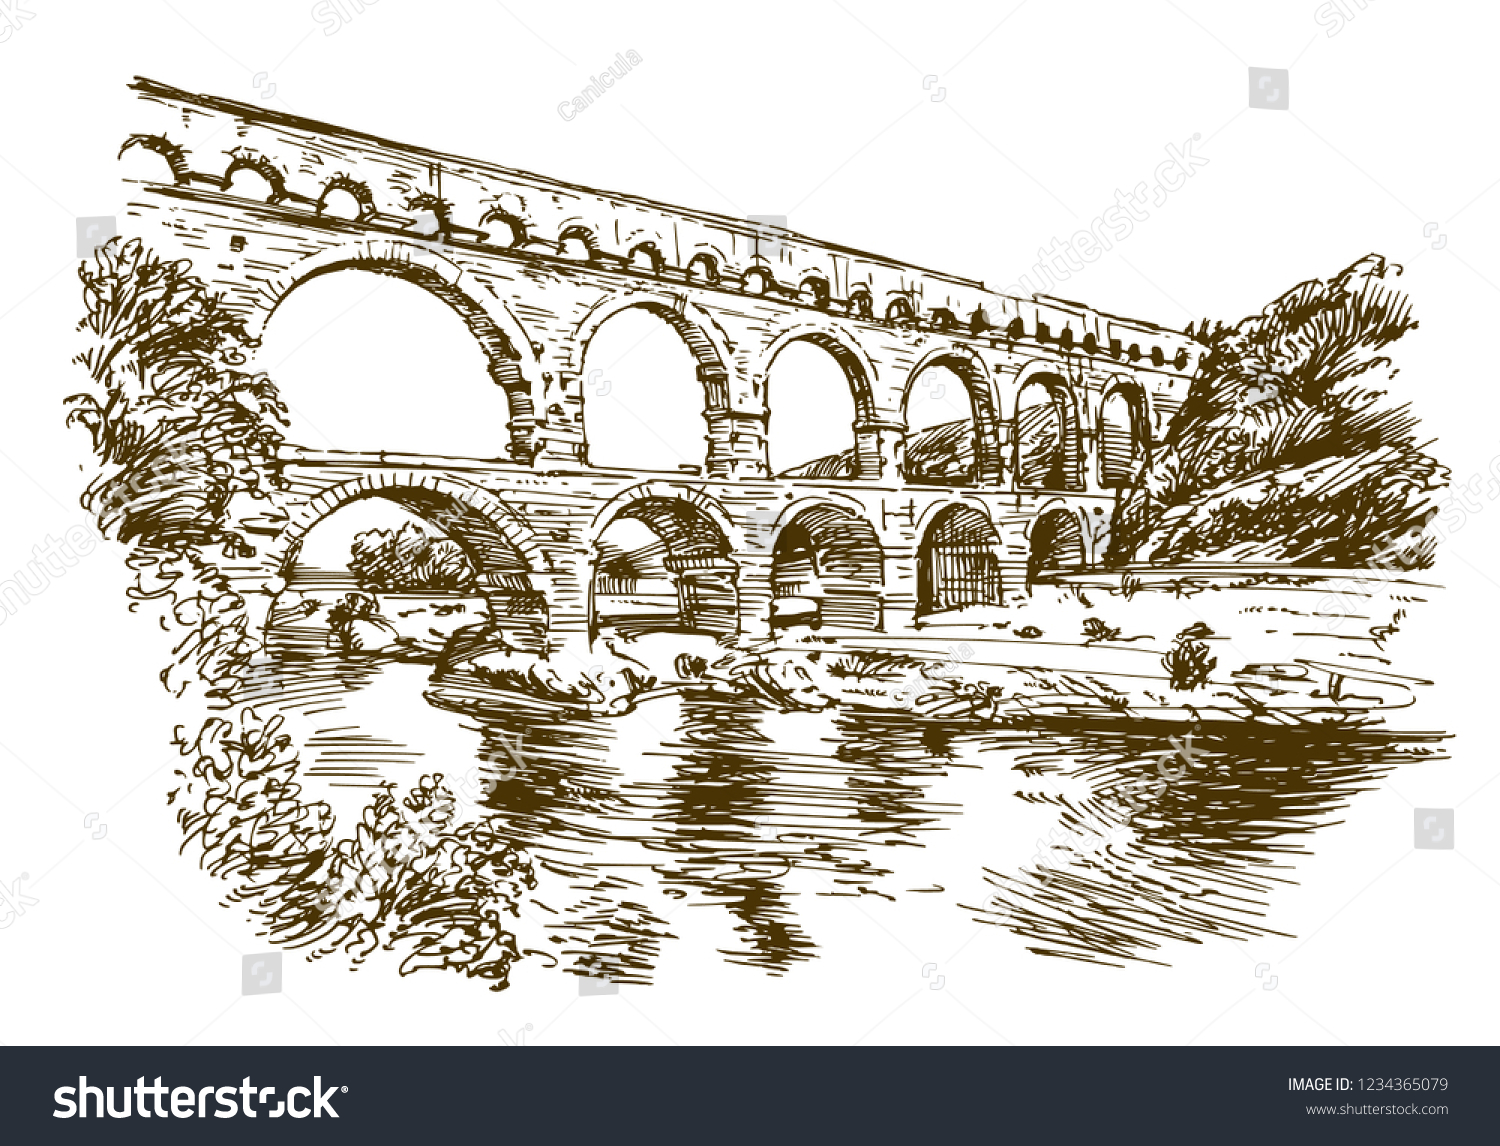 SVG of Pont du Gard, France. Hand drawn illustration. svg